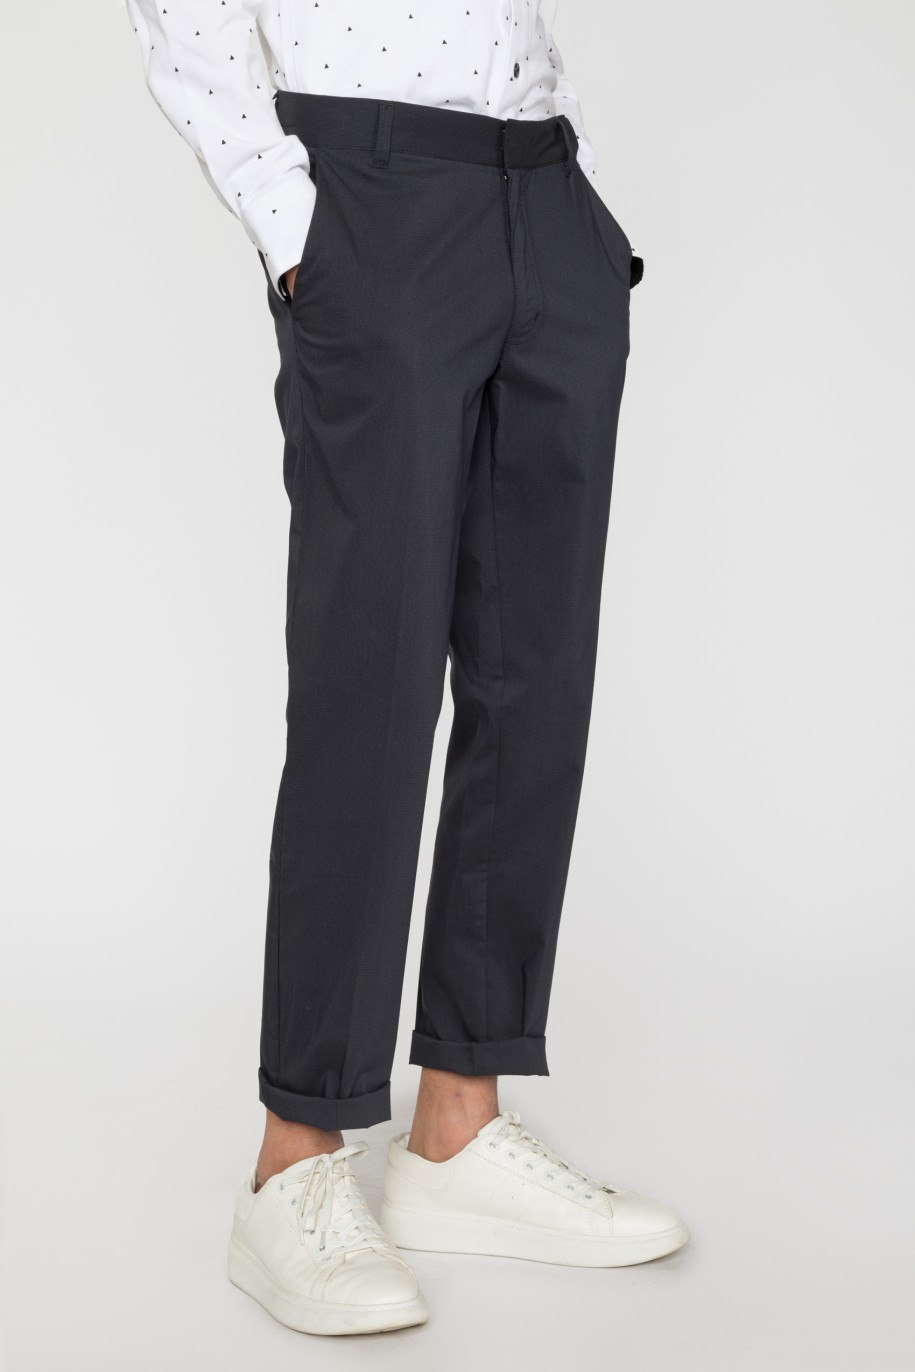 Granatowe spodnie garniturowe dla chłopaka - 33745